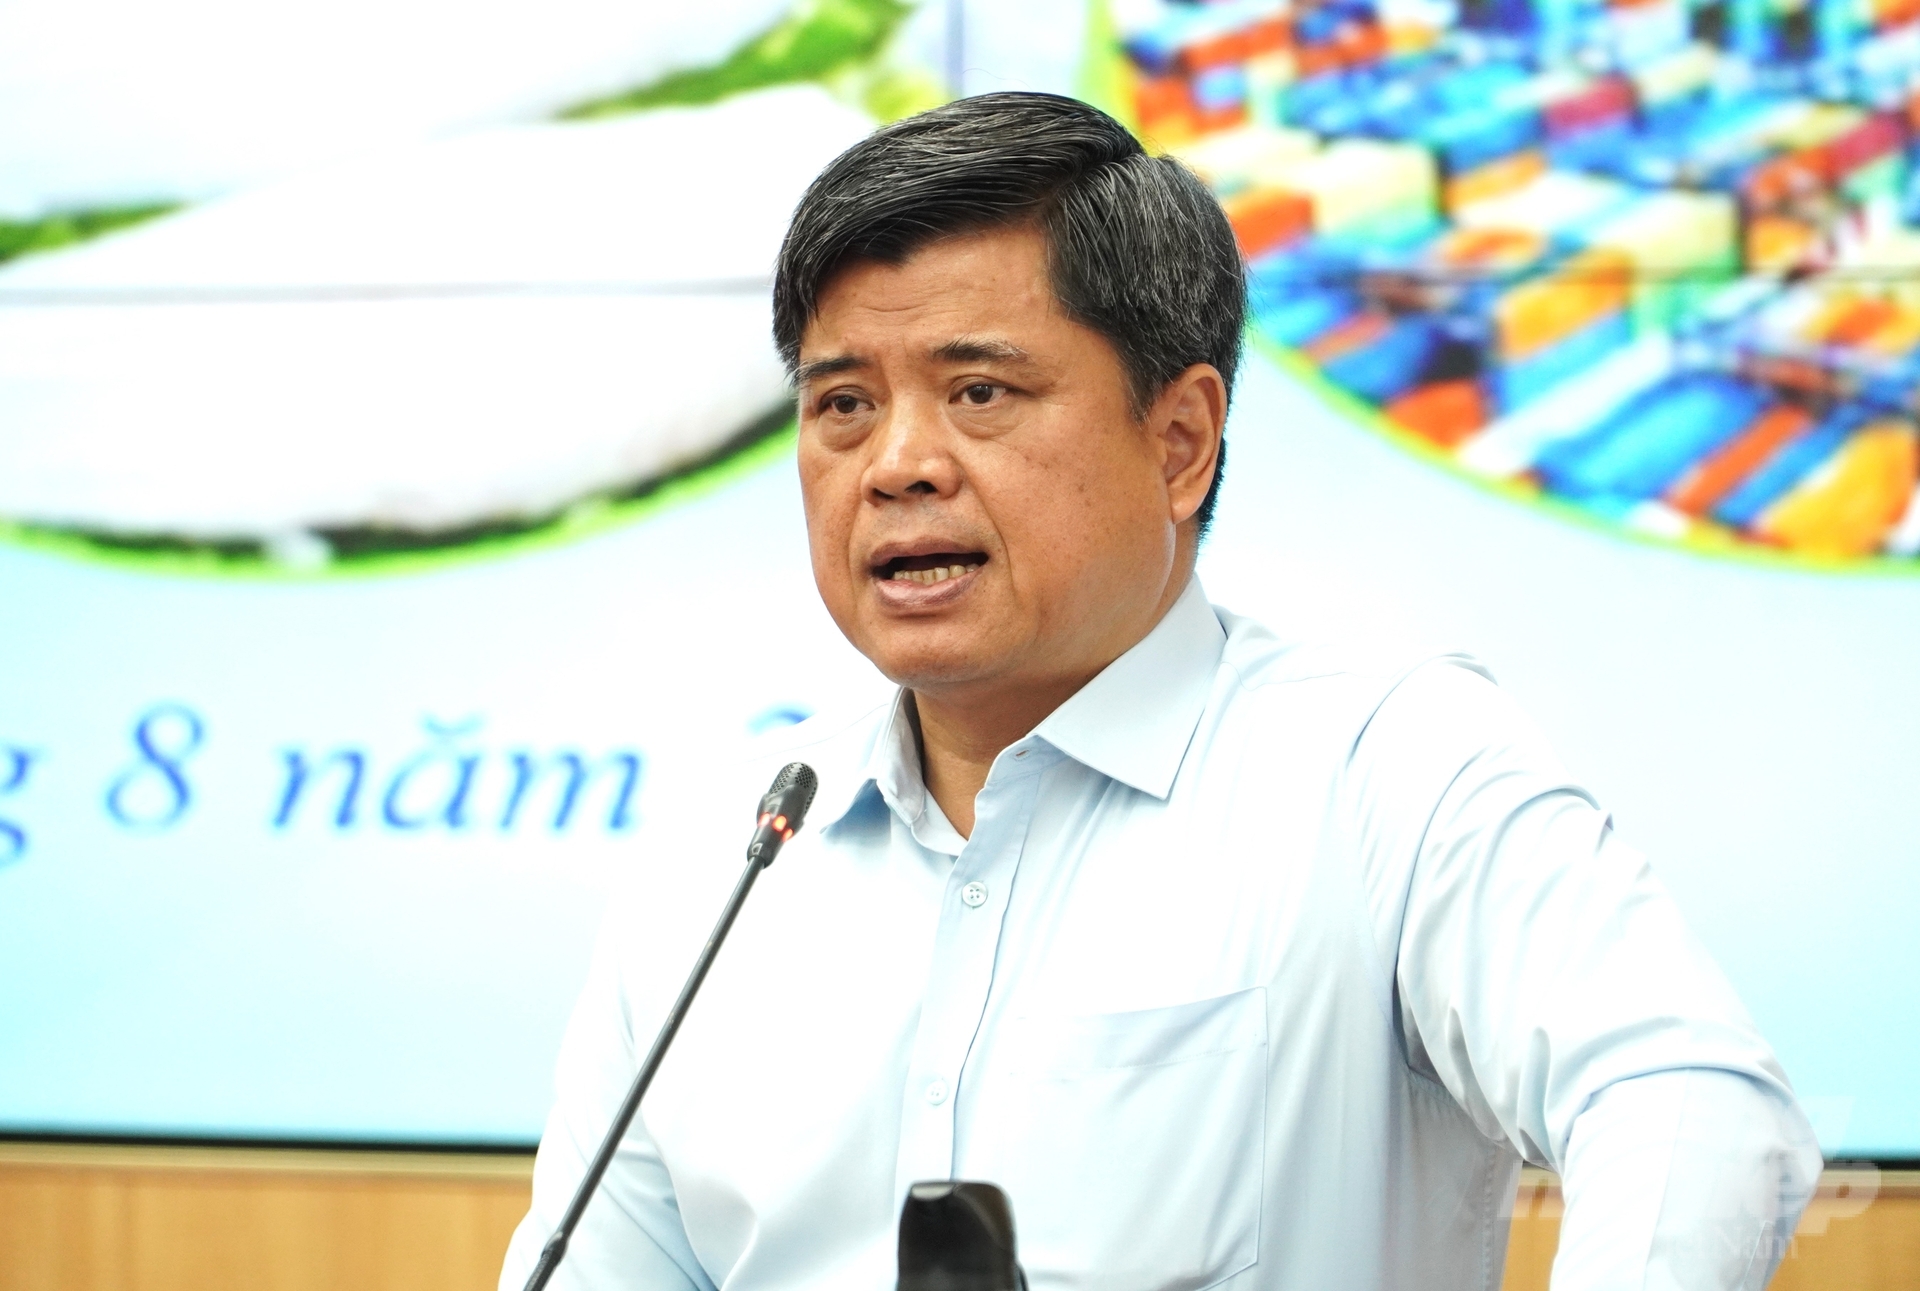 Thứ trưởng Bộ NN-PTNT Trần Thanh Nam đề nghị ngành hàng cá tra tìm kiếm, mở rộng thị trường tiềm năng như Trung Quốc, Mỹ, Nhật Bản, Hàn Quốc. Ảnh: Kim Anh.